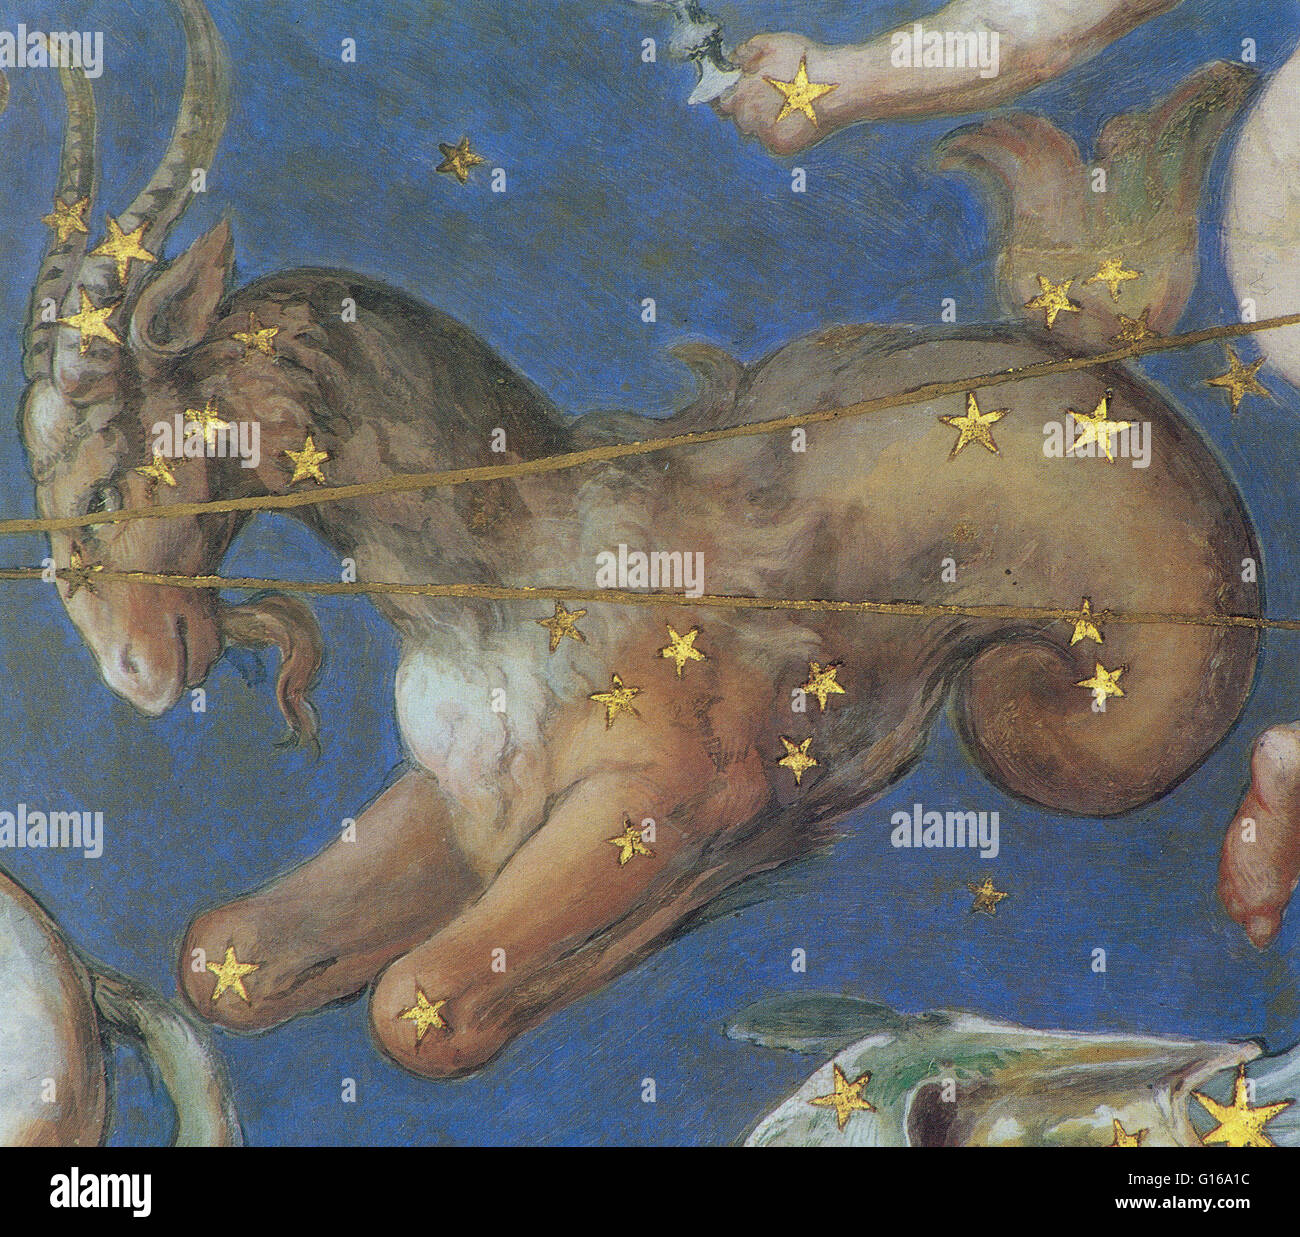 Le Capricorne constellation sur le plafond de la Villa Farnèse, Montefiascone, Italie a peint en 1575. Le Capricorne est l'une des constellations du zodiaque, il est souvent appelé le Capricorne, surtout lorsqu'il s'agit de la même signe astrologique. Sa na Banque D'Images